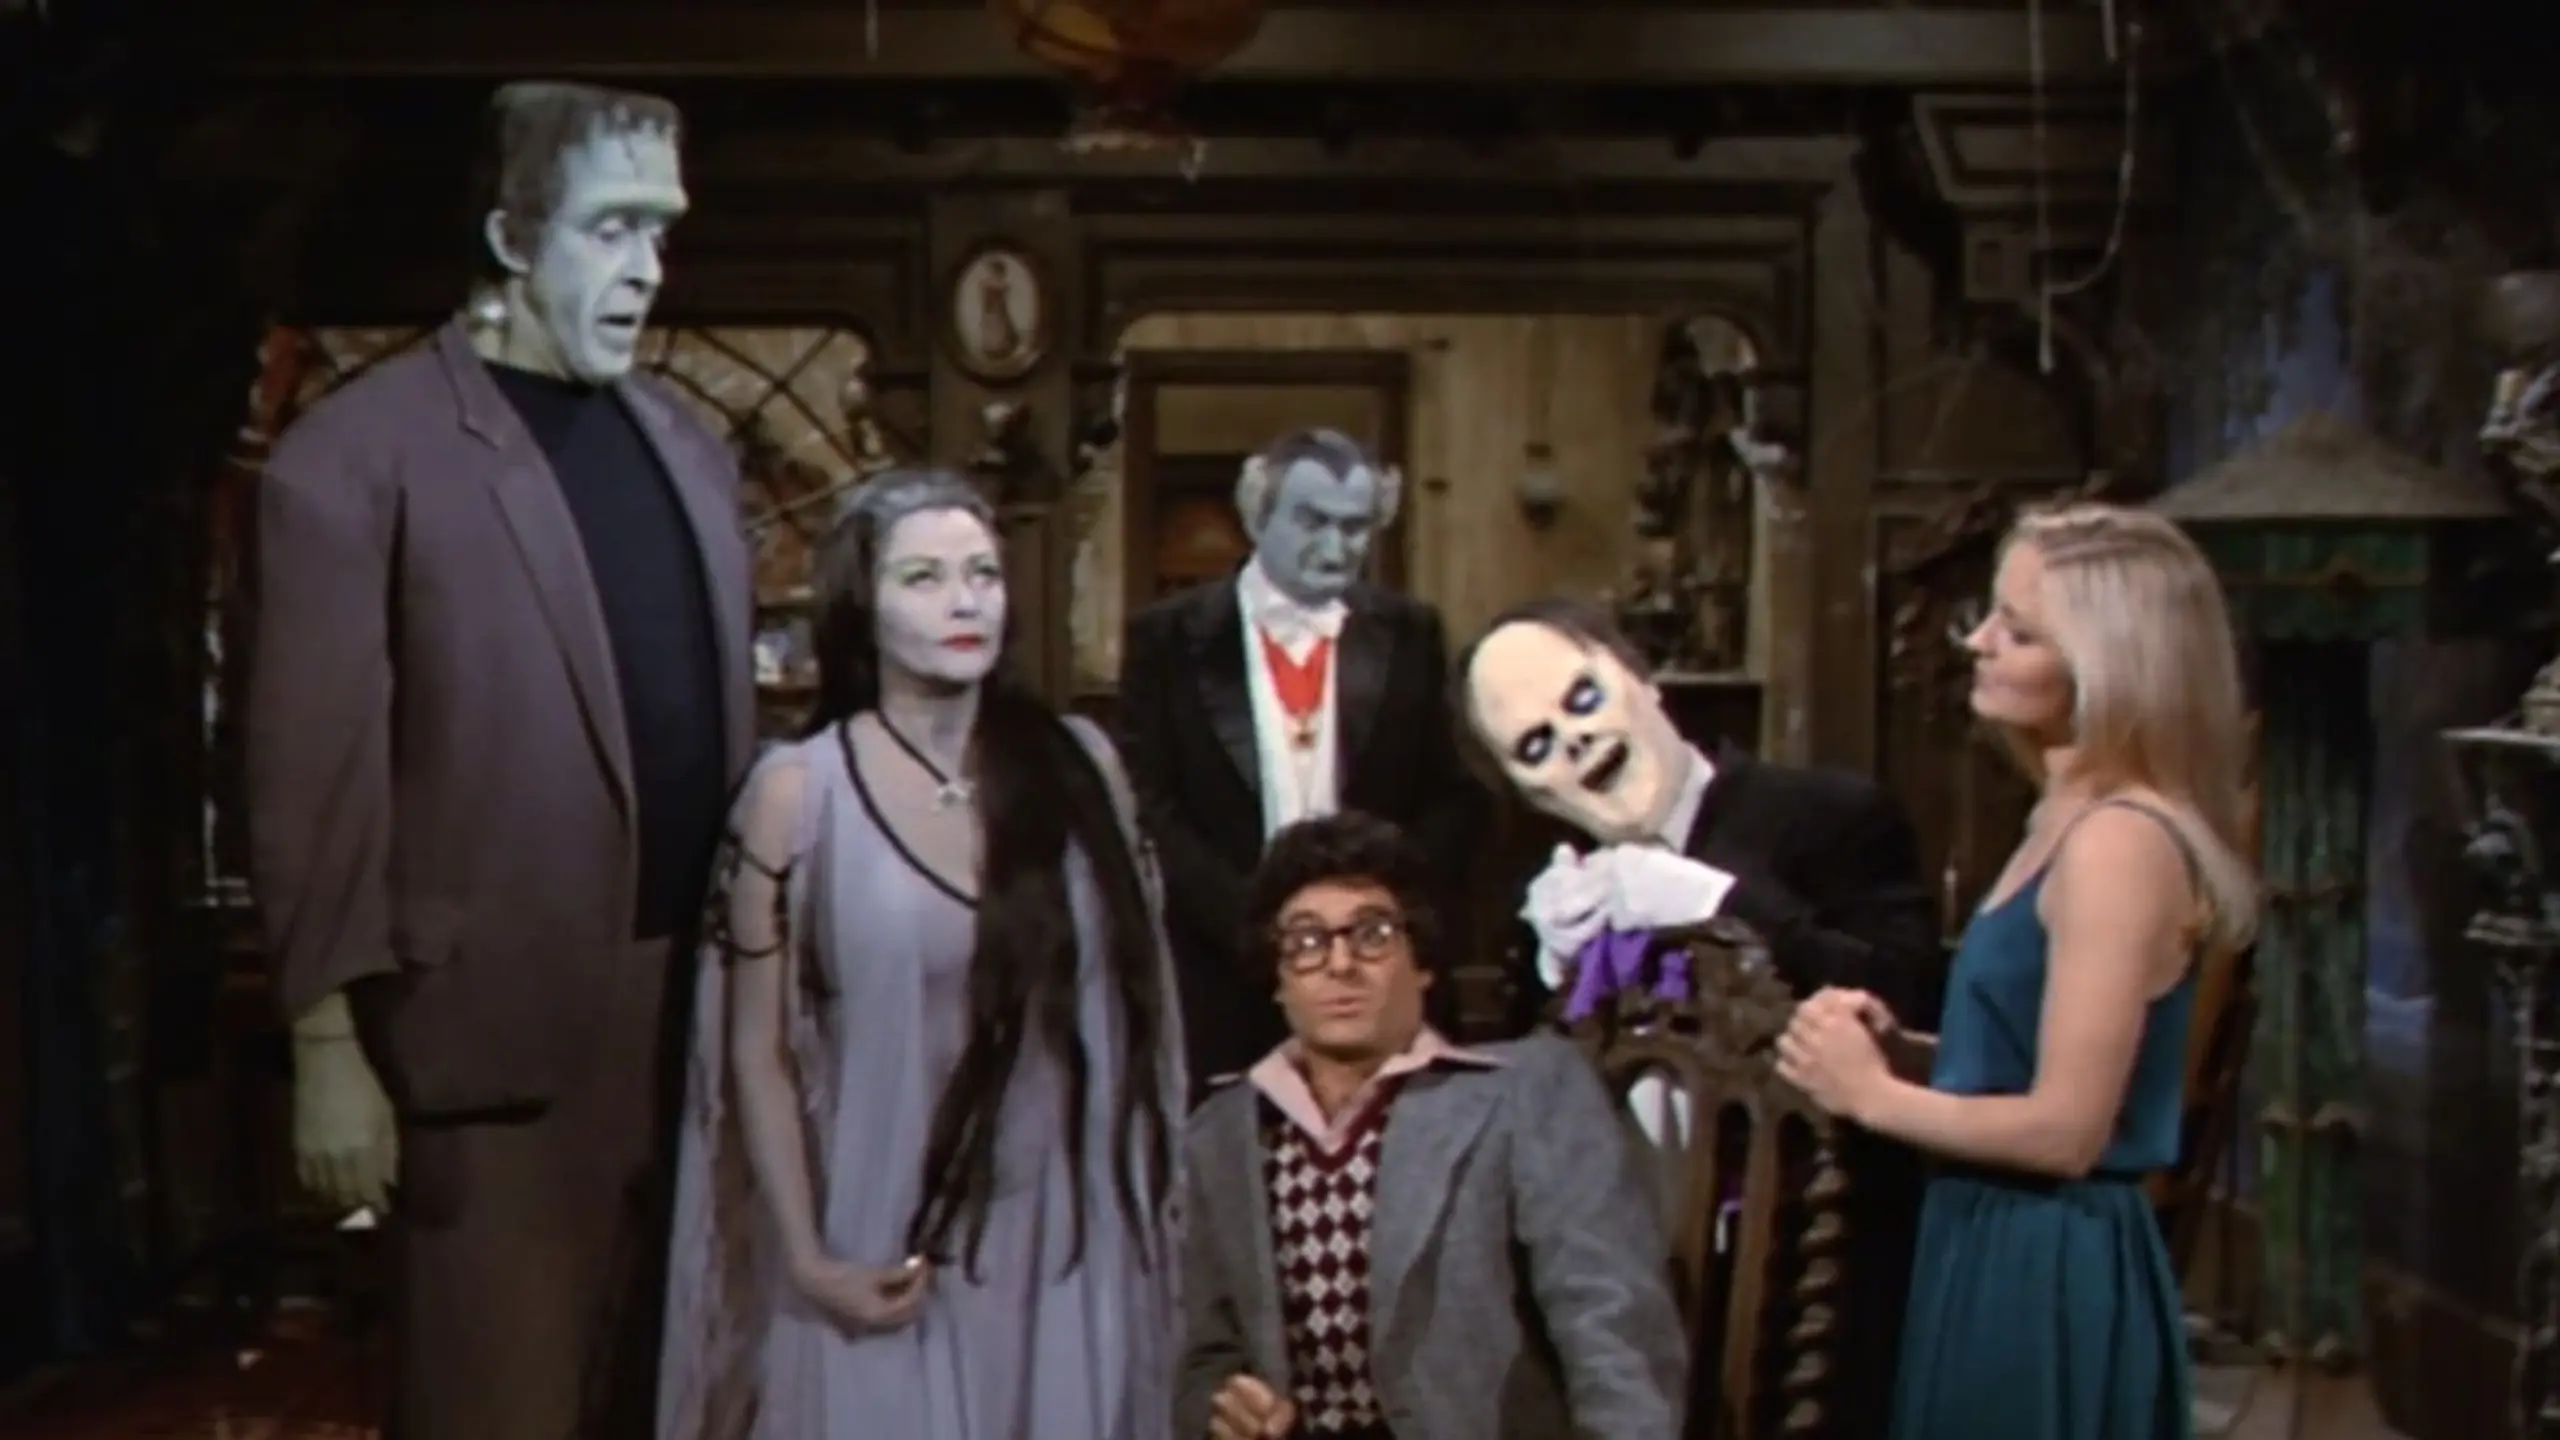 Die Rückkehr der Familie Frankenstein